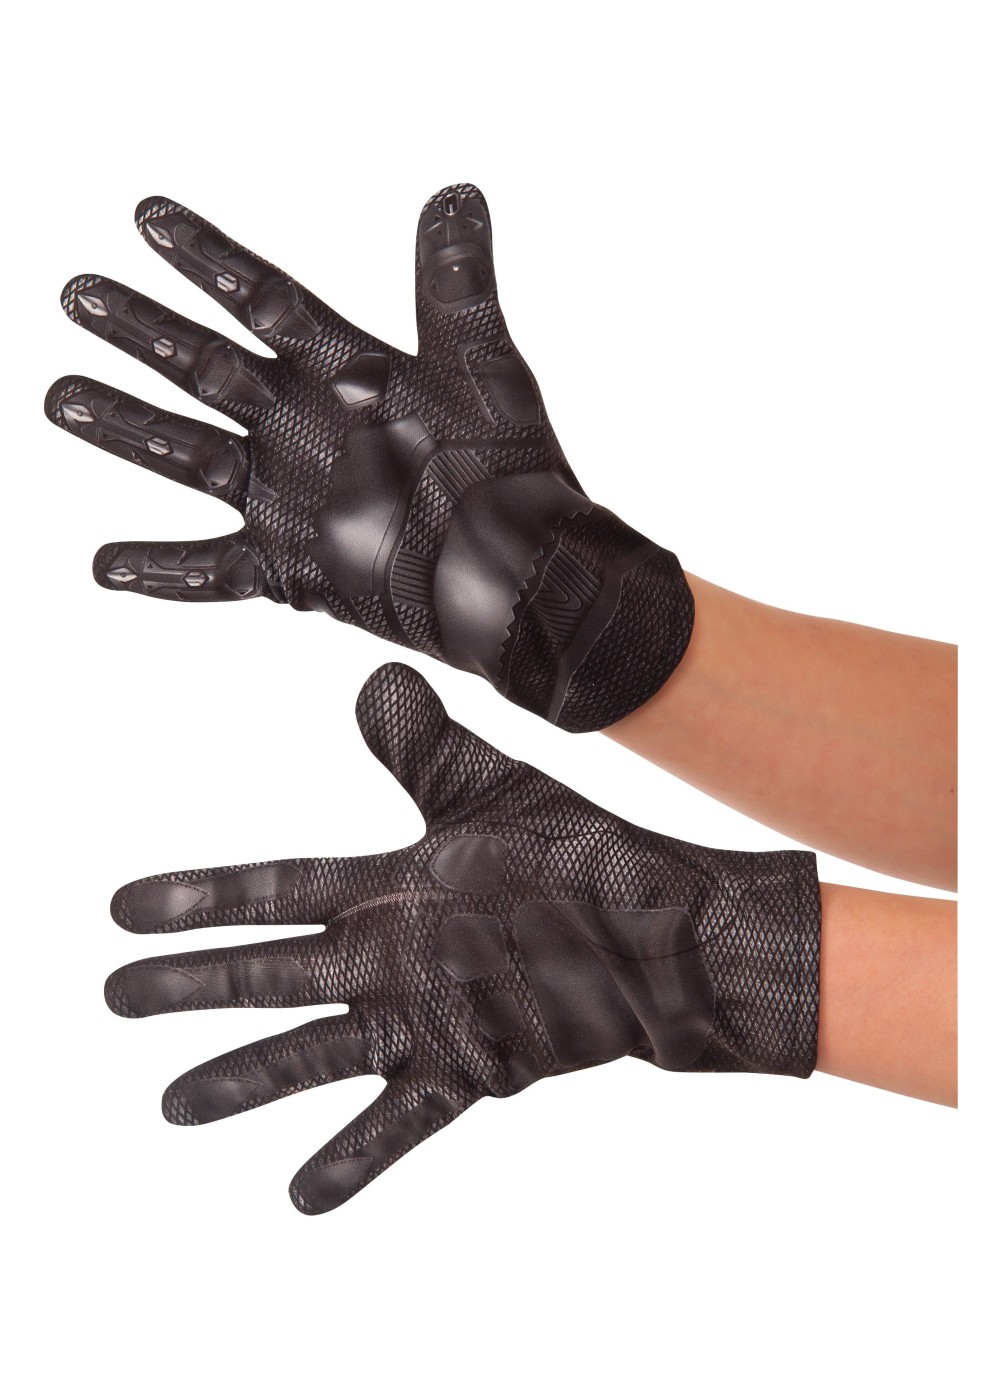 Marvel Civil War Black Panther Boys Costume Gloves